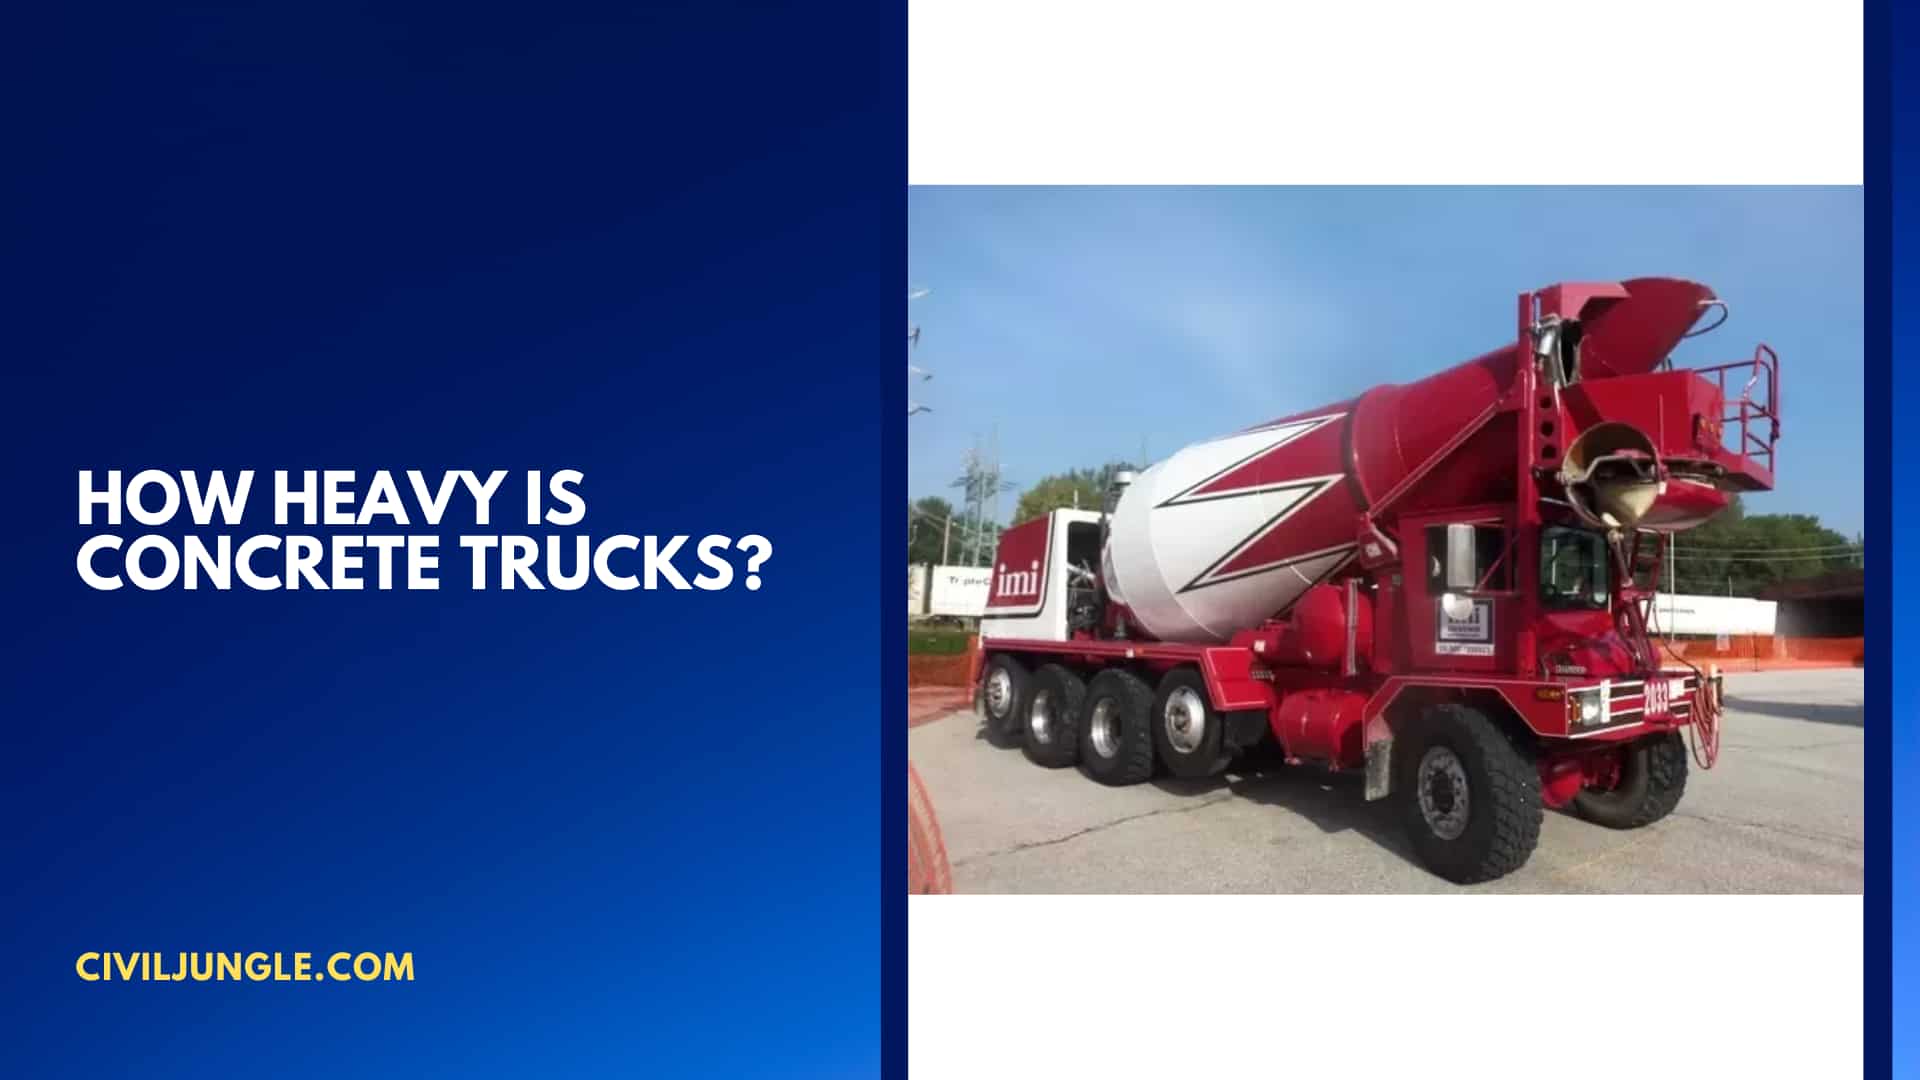 How Heavy is Concrete Trucks?